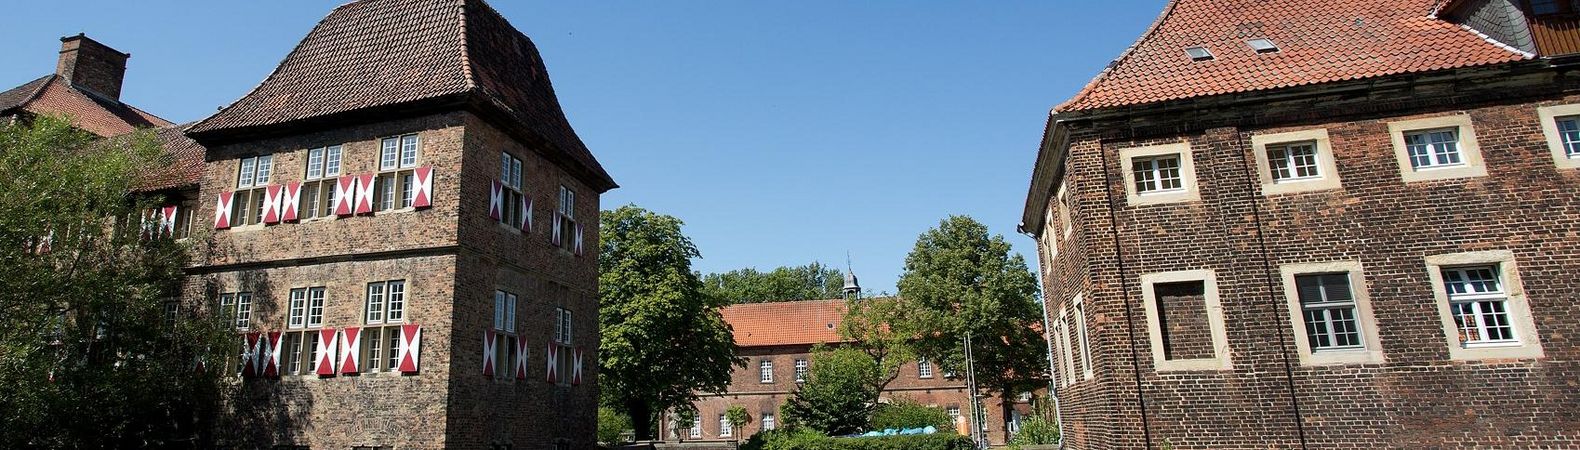 Schloss Oberwerries in Hamm